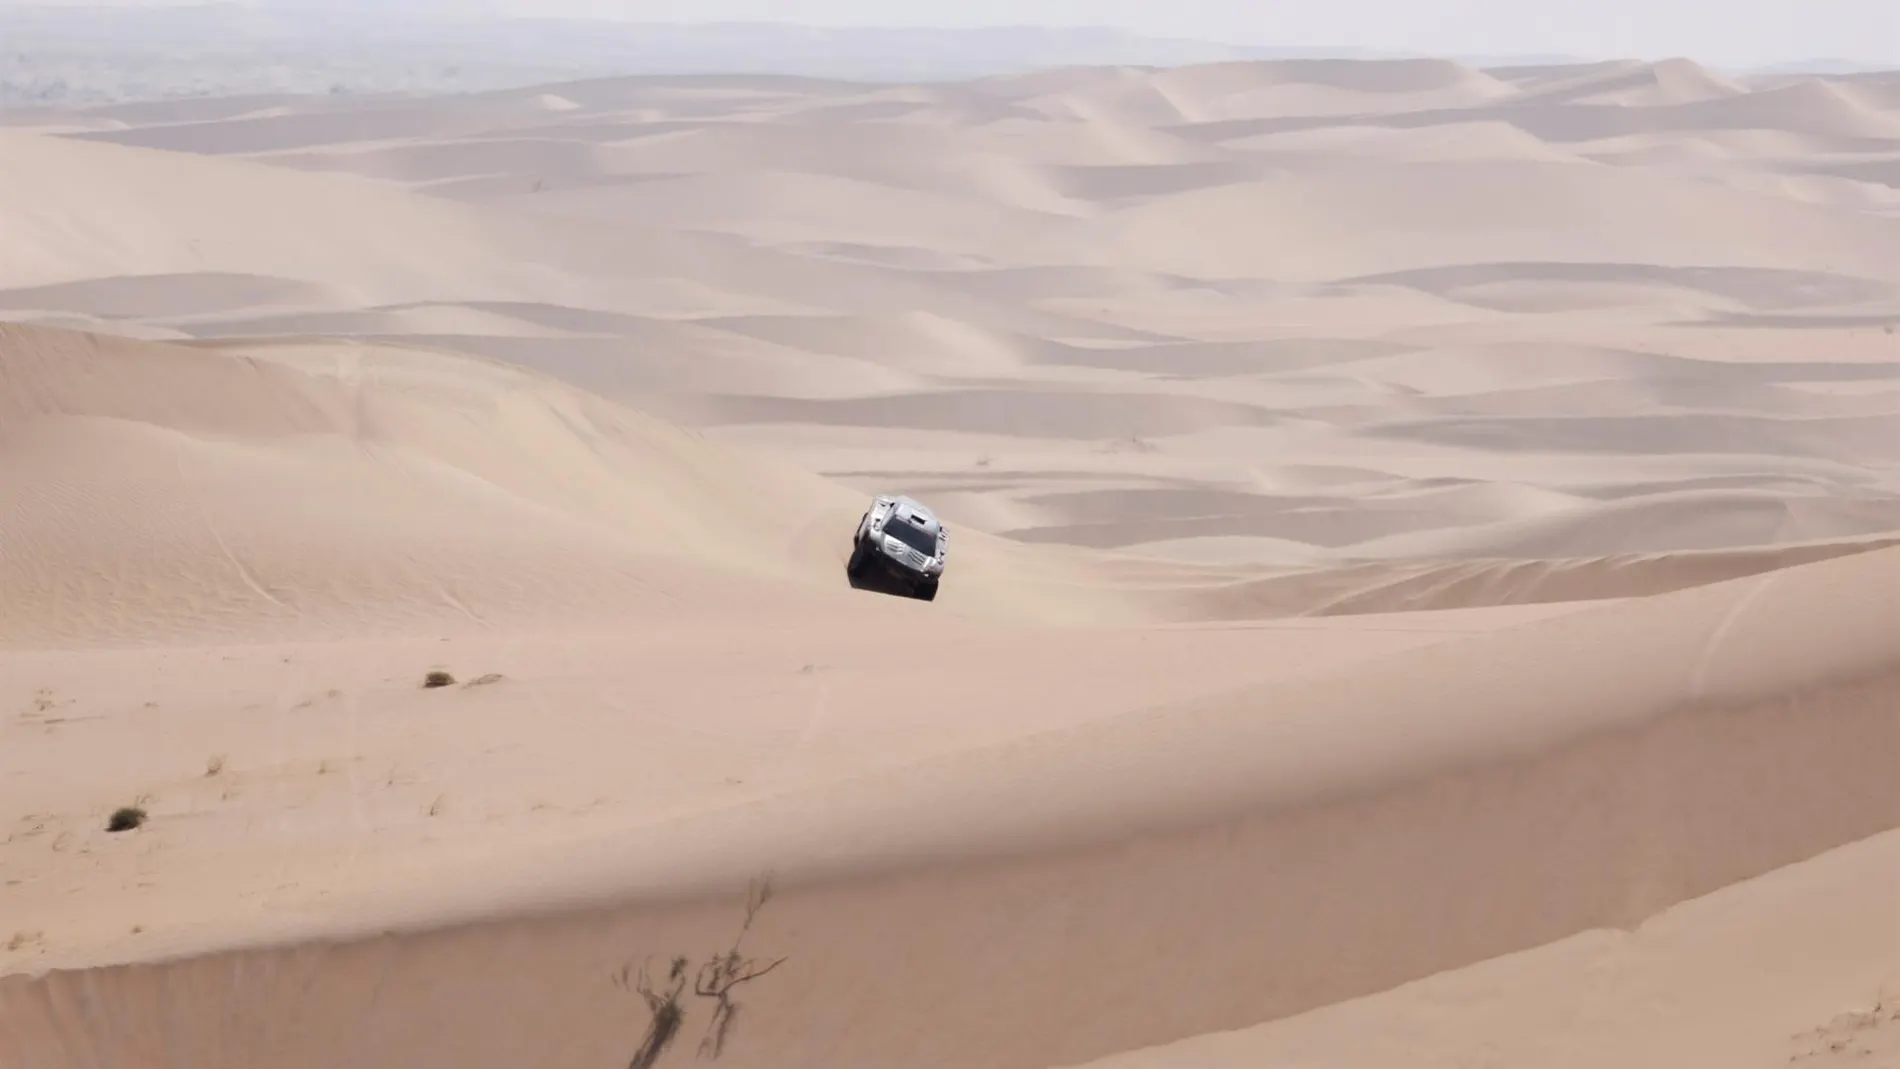 Imagen del Rally Dakar 2022